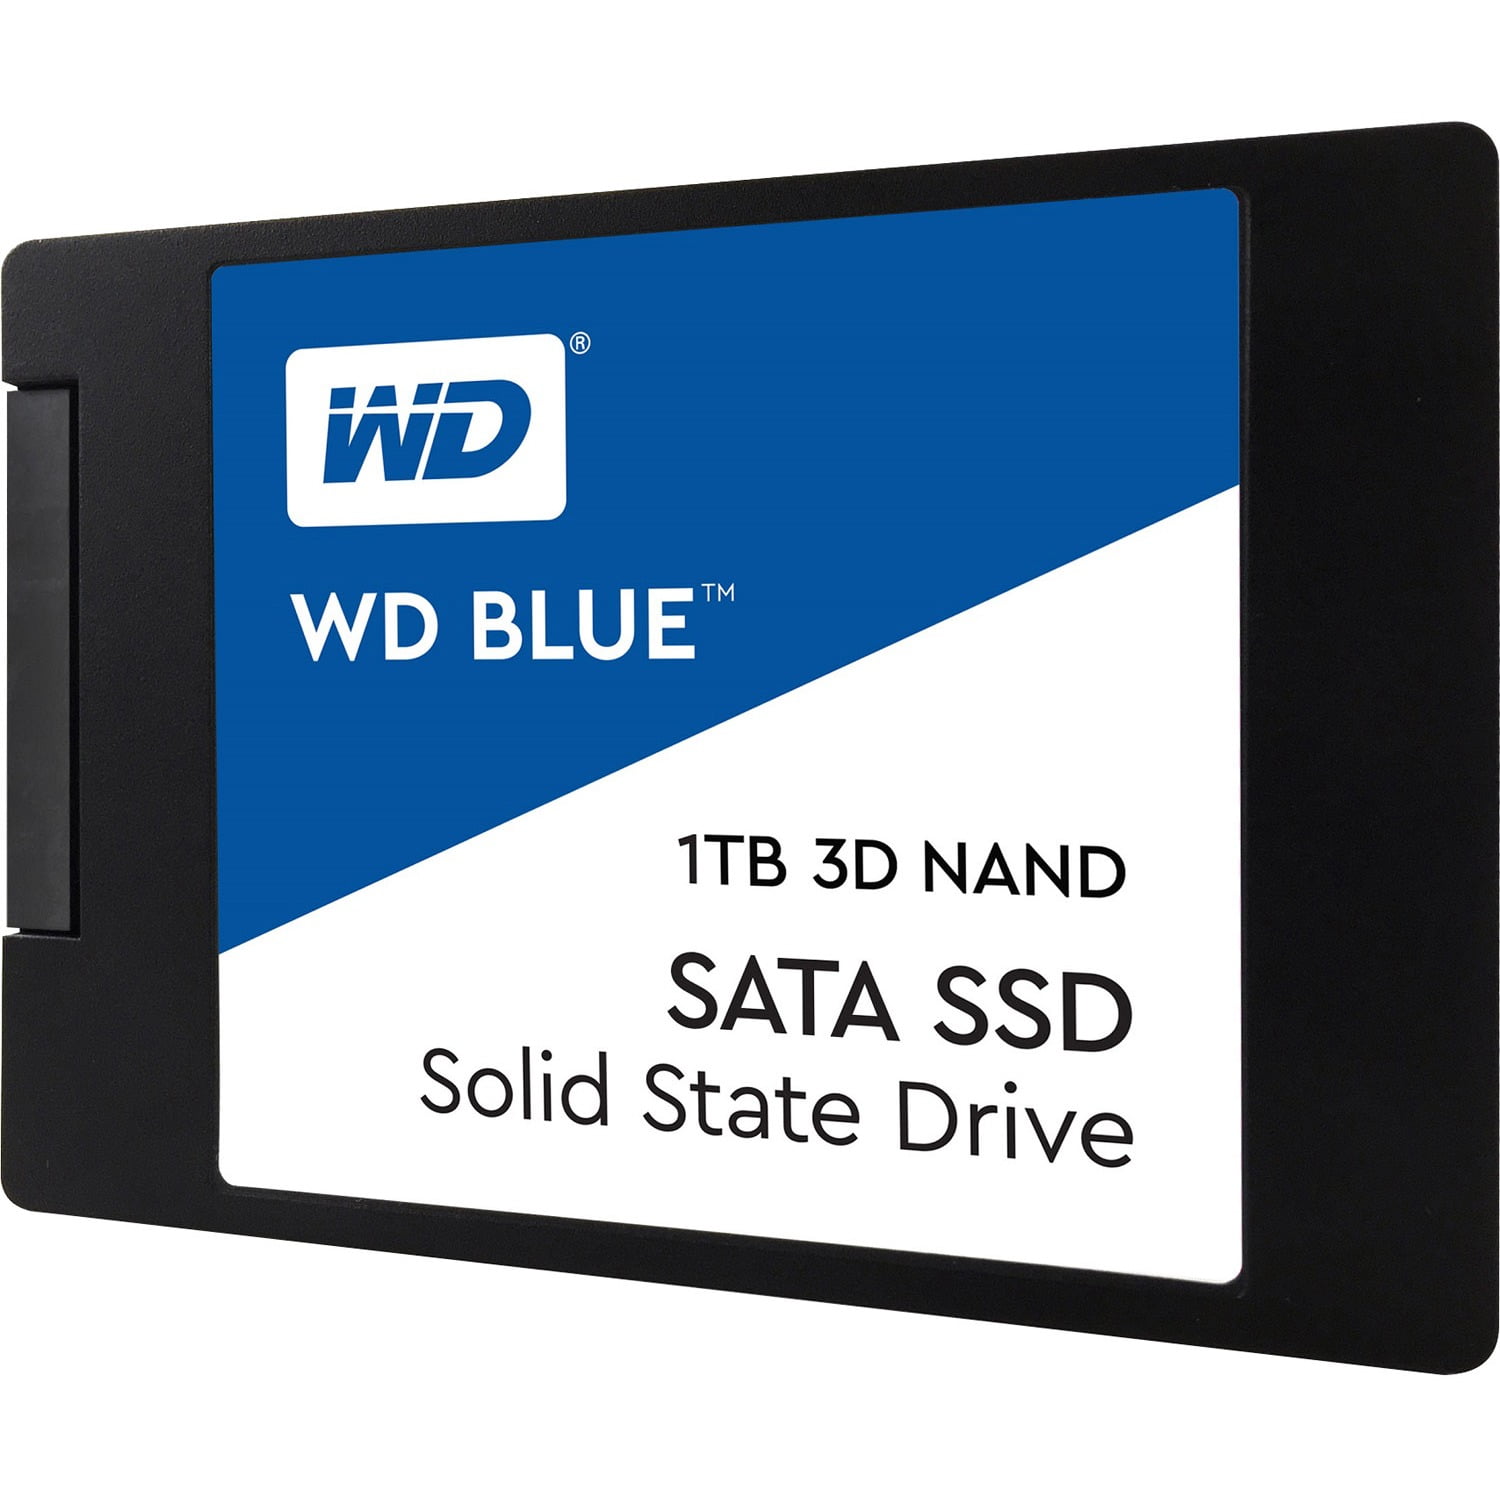 WD Blue 3D NAND SSD WDS100T2B0A - Solid state drive - 1 TB - internal - 2.5" - 6Gb/s Walmart.com